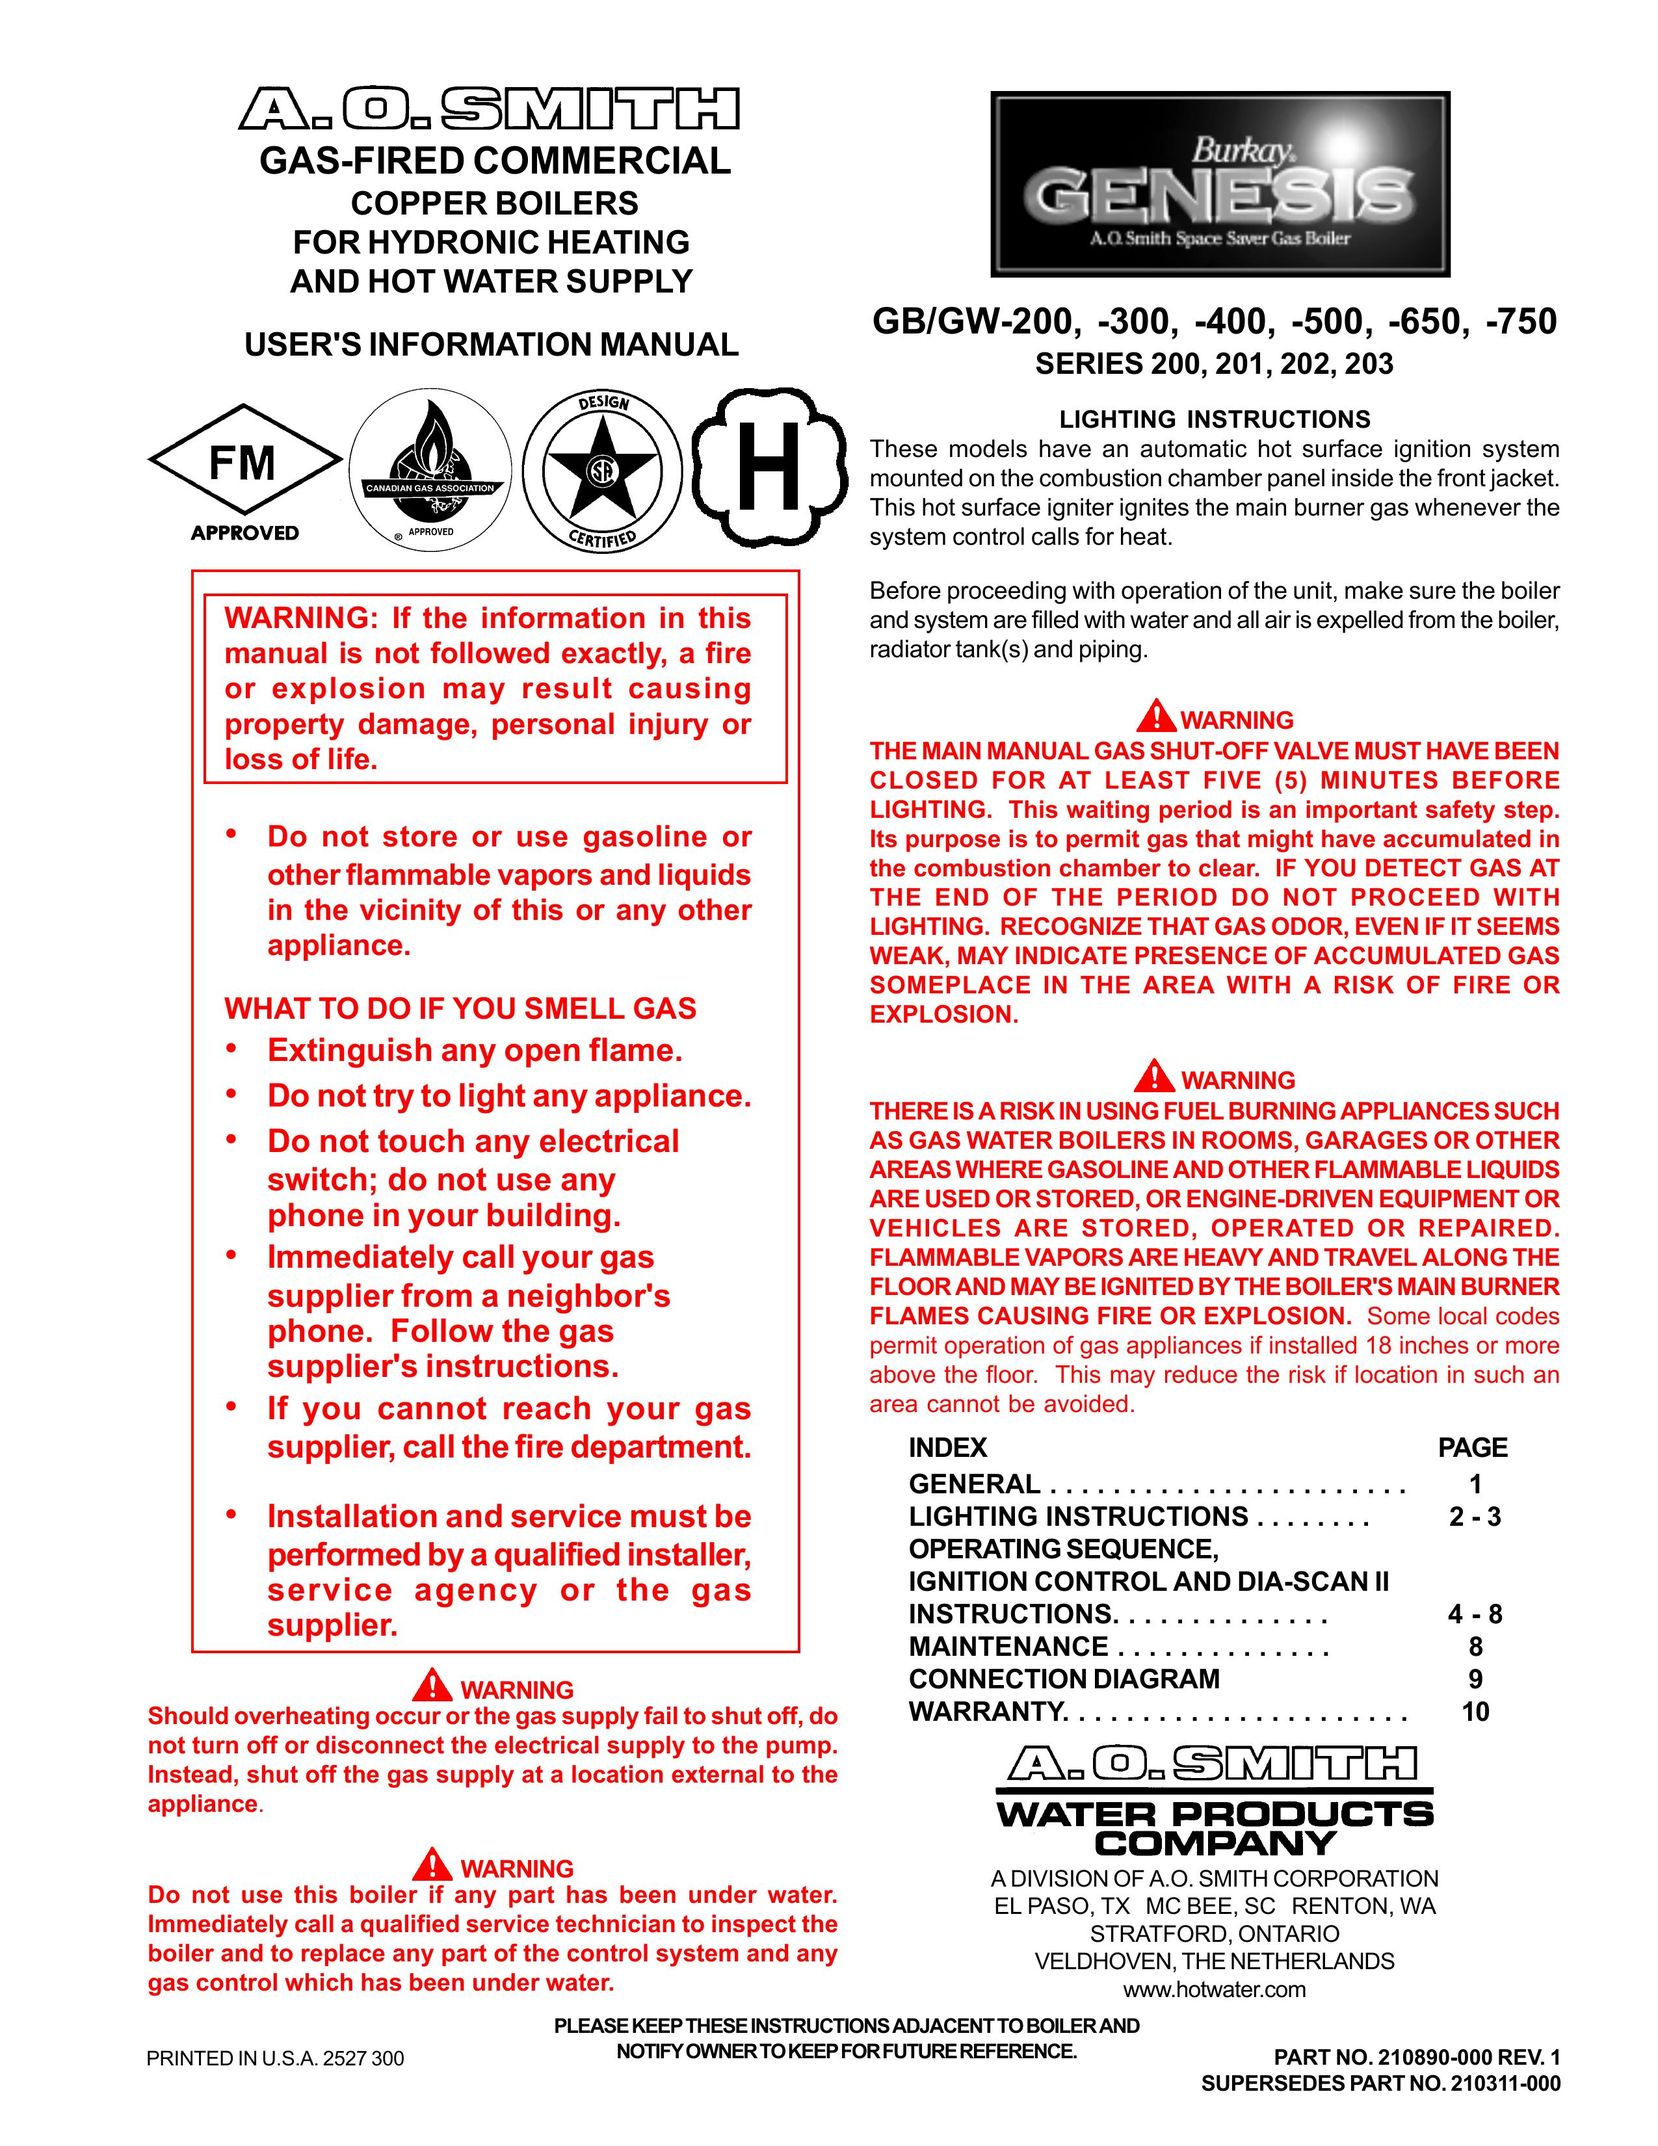 A.O. Smith GB/GW-200 Boiler User Manual (Page 1)